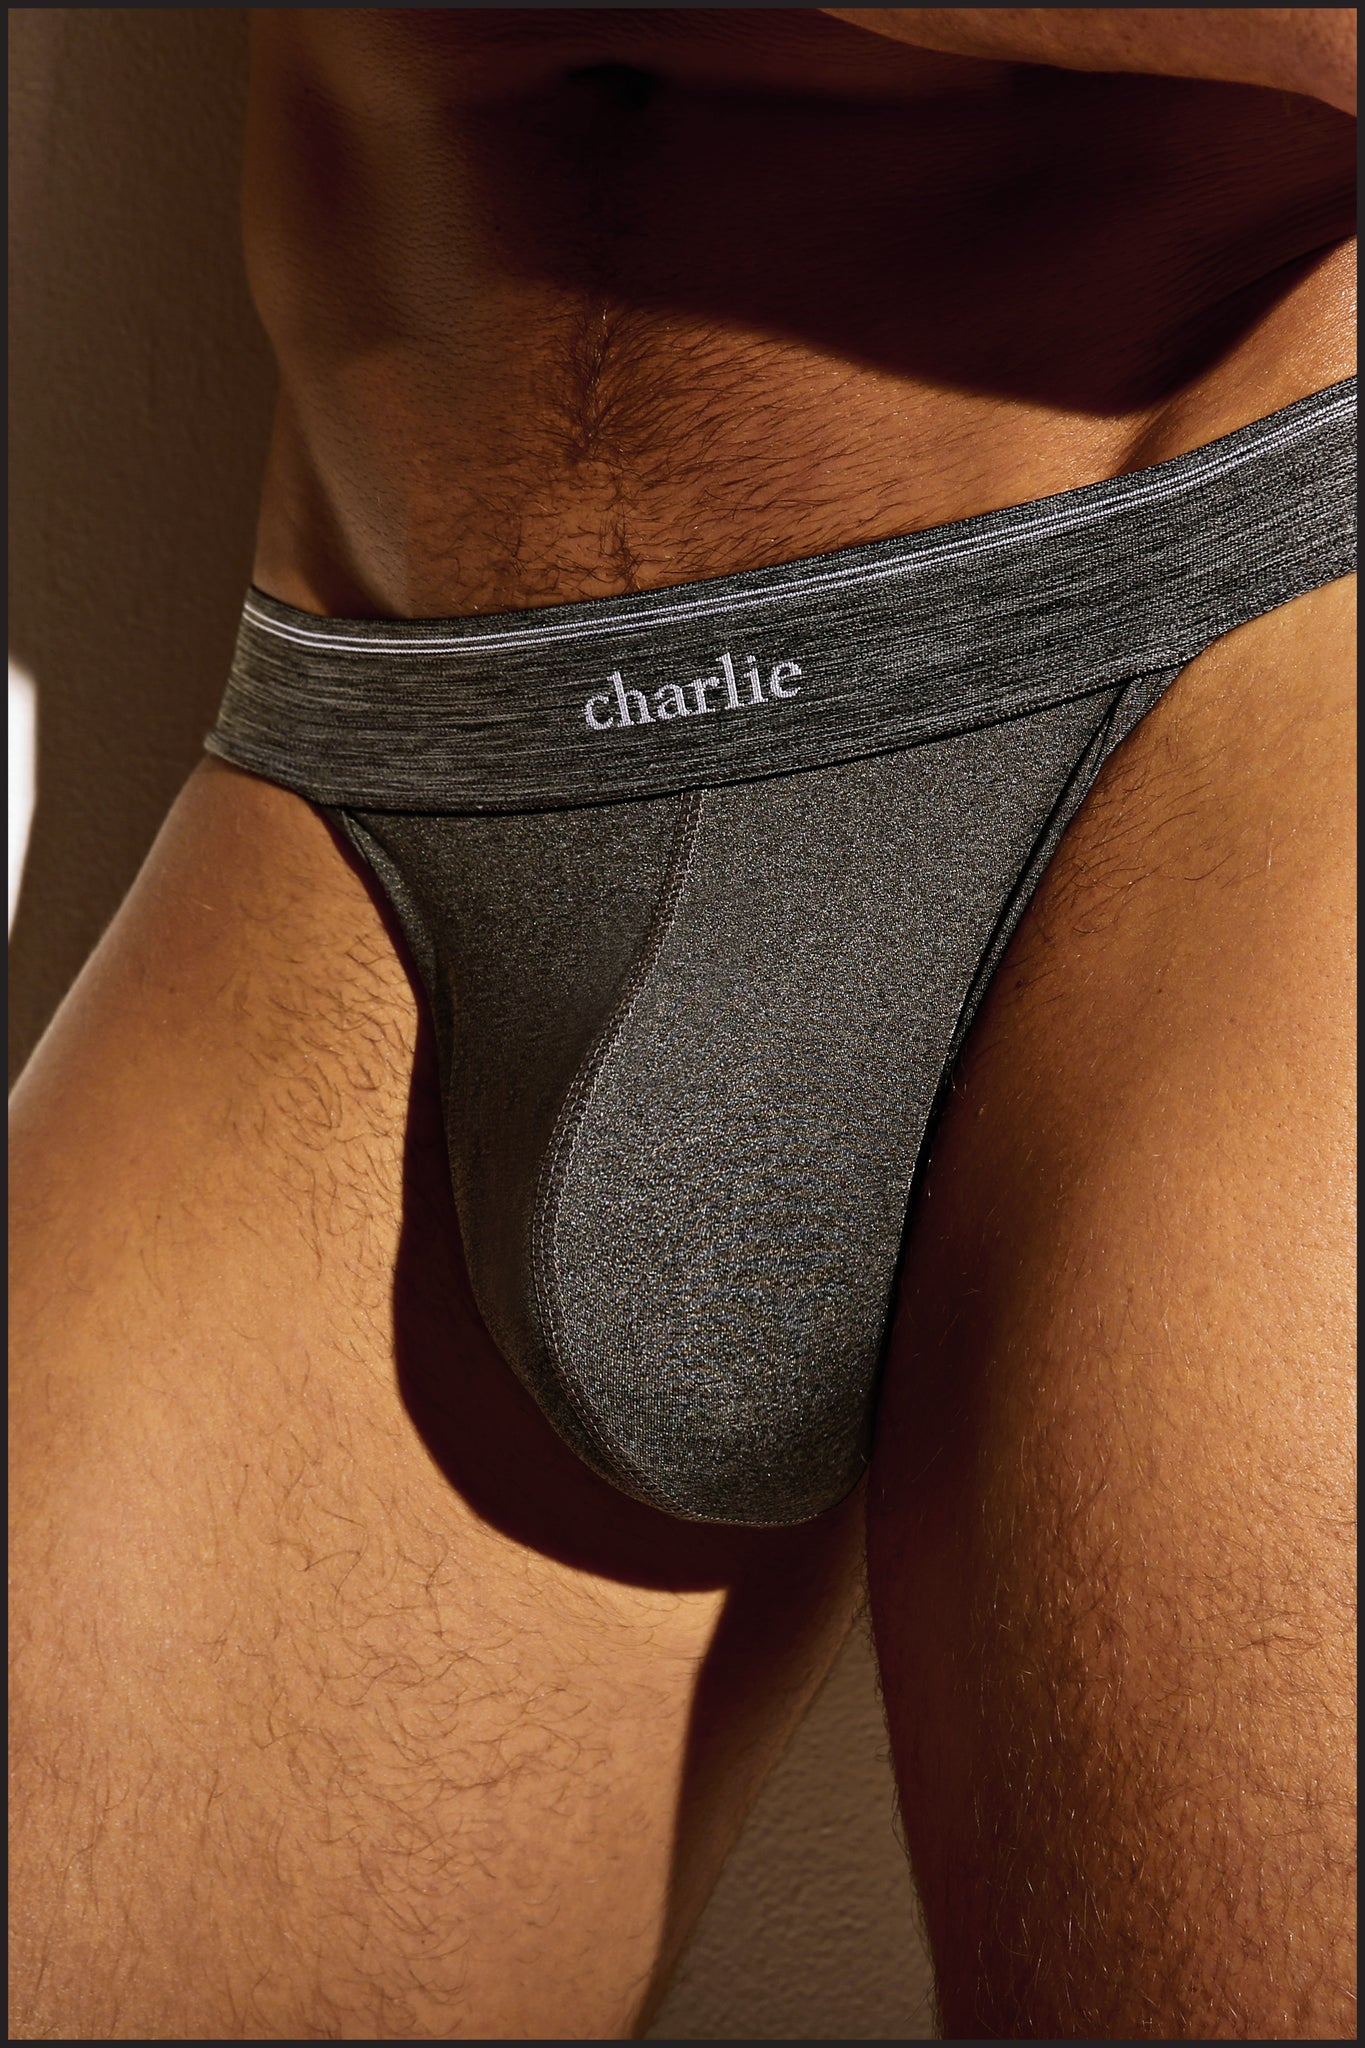 Charlie by Matthew Zink Fitness Underwear Sport Brief